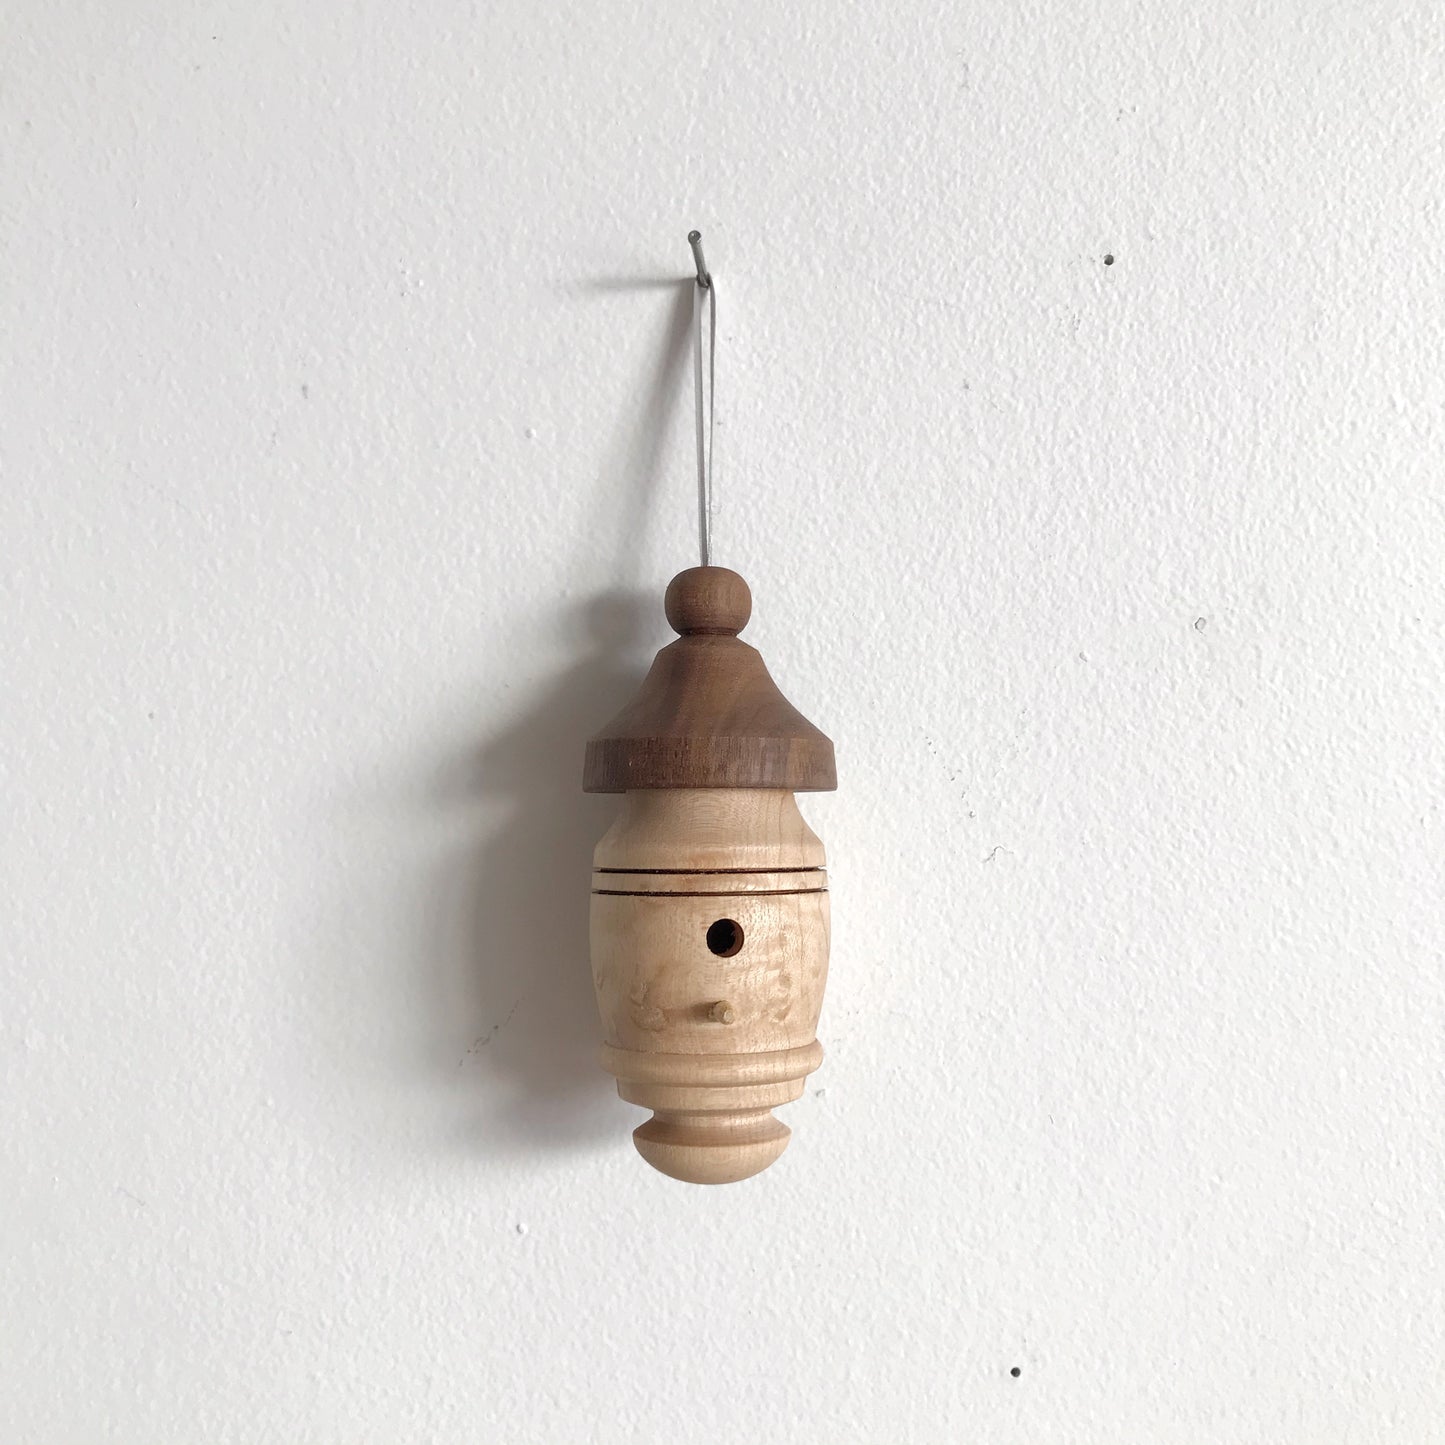 Wooden Heirloom Ornament, Birdhouse / Fairy House